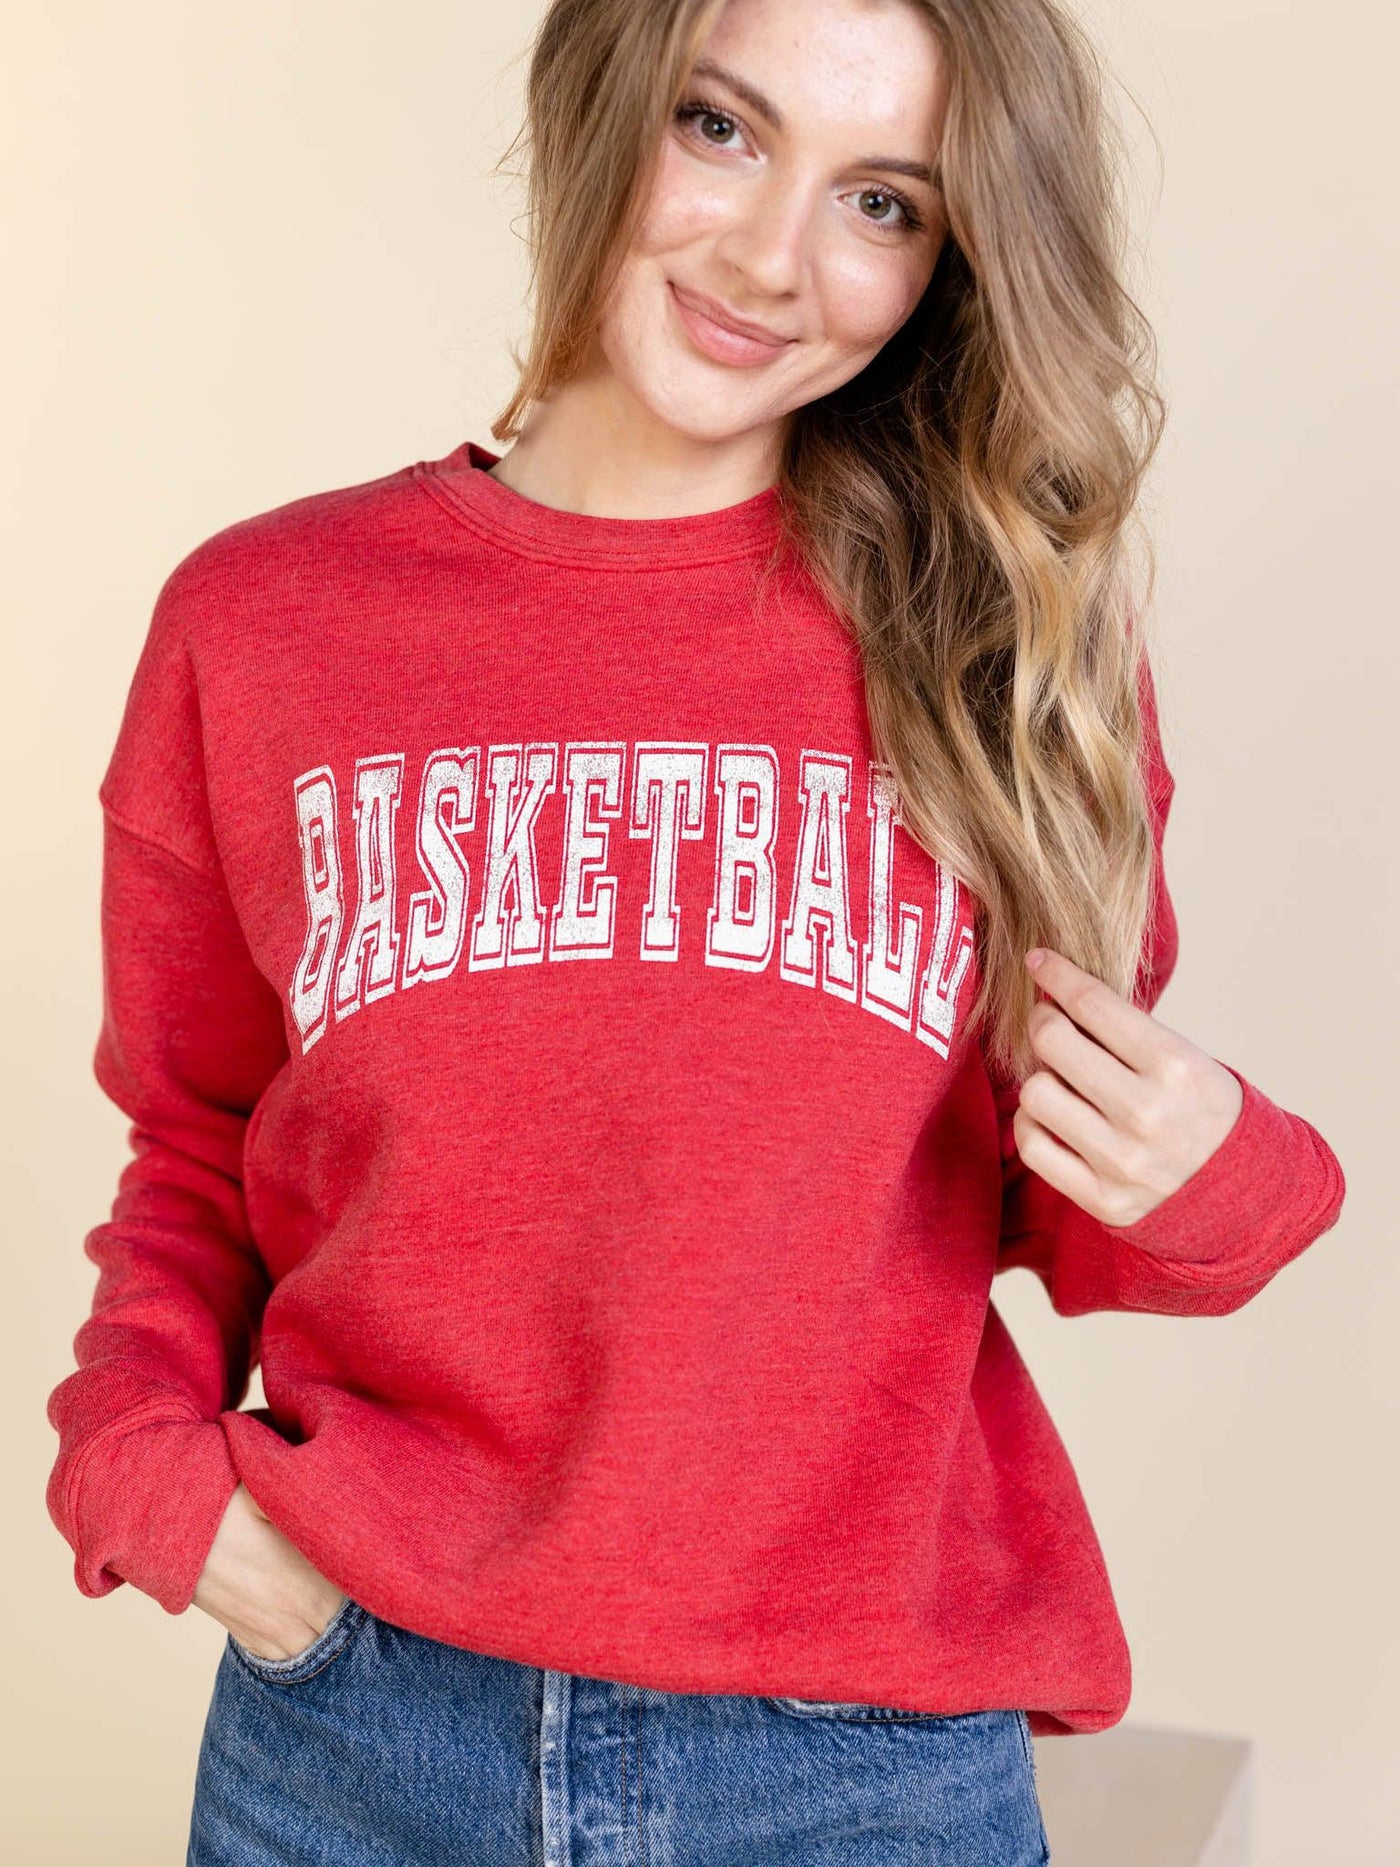 basketball sweatshirt